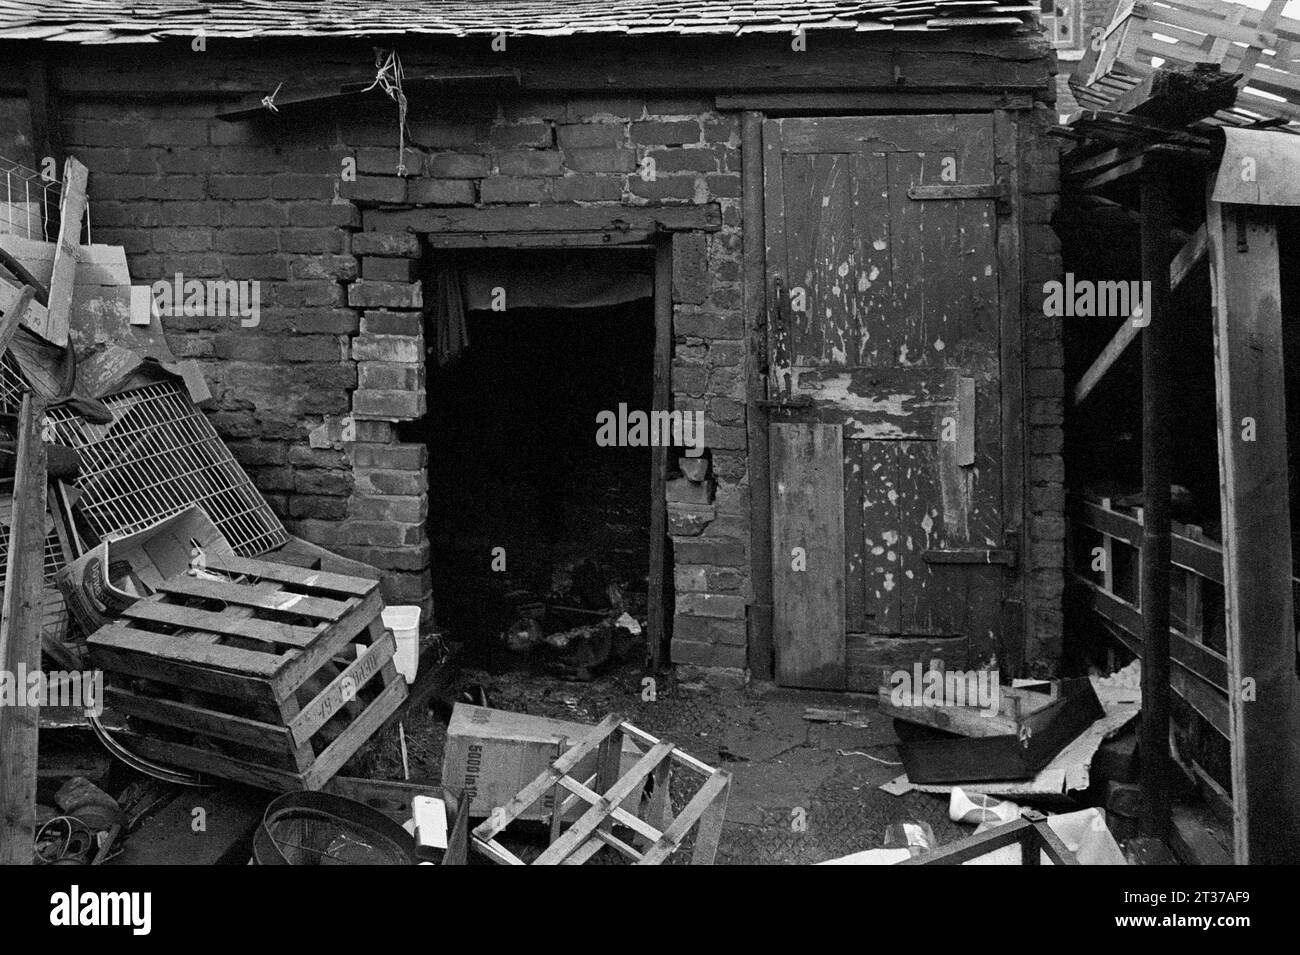 Objets jetés à l'extérieur d'une unité de stockage à l'arrière d'un magasin, photo prise pendant le nettoyage des bidonvilles et la démolition de St ann's, Nottingham. 1969-1972 Banque D'Images